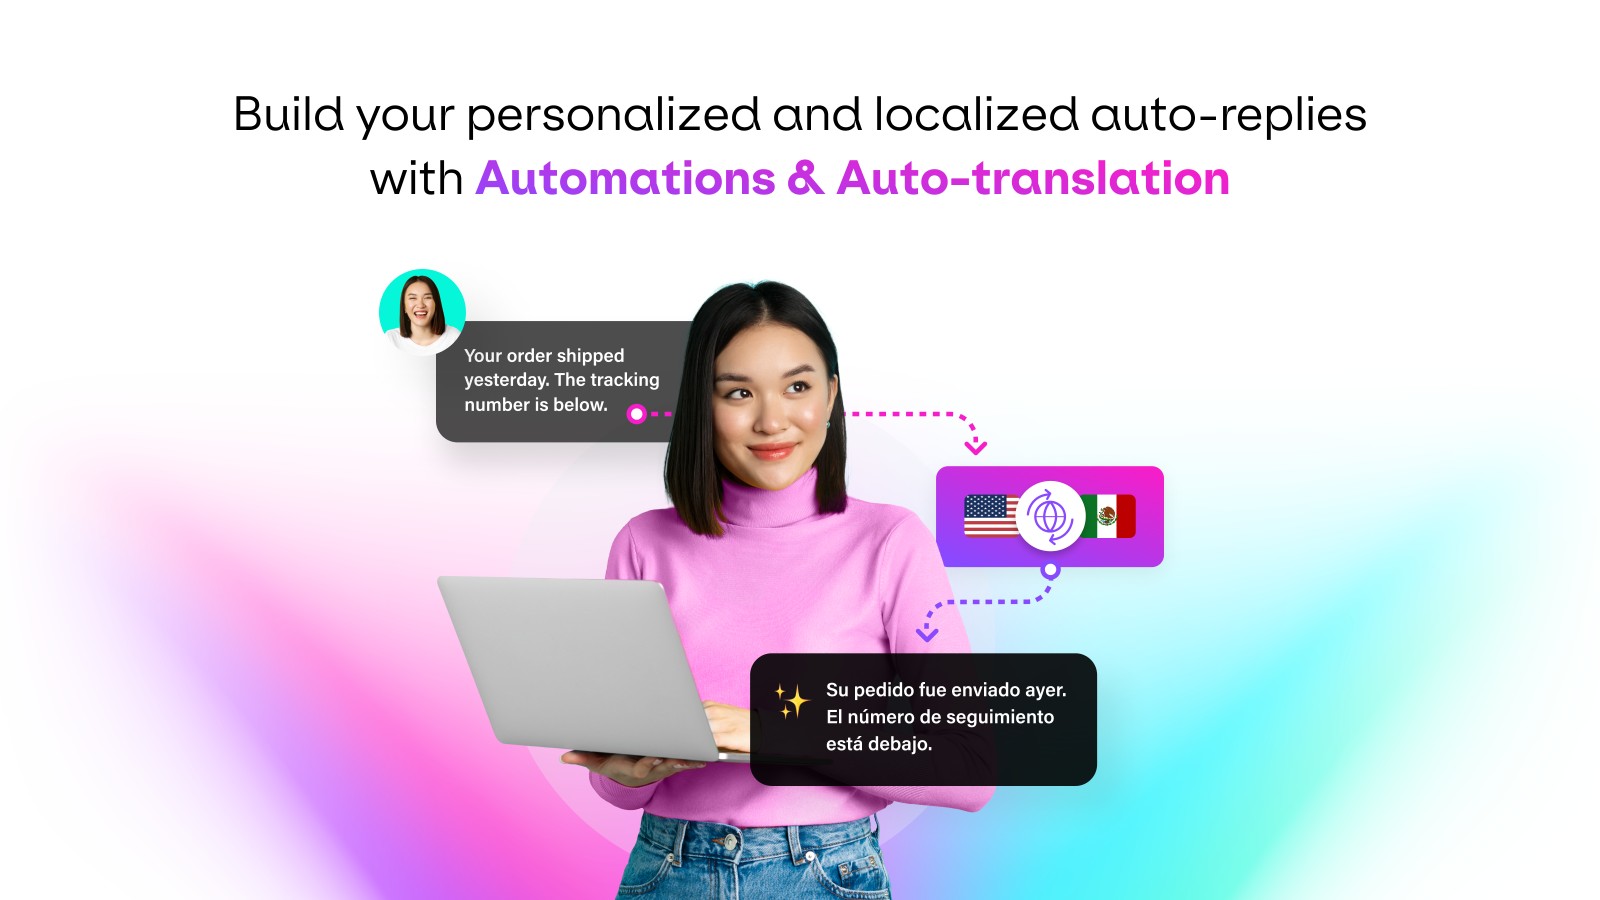 Automatizaciones y auto-traducción